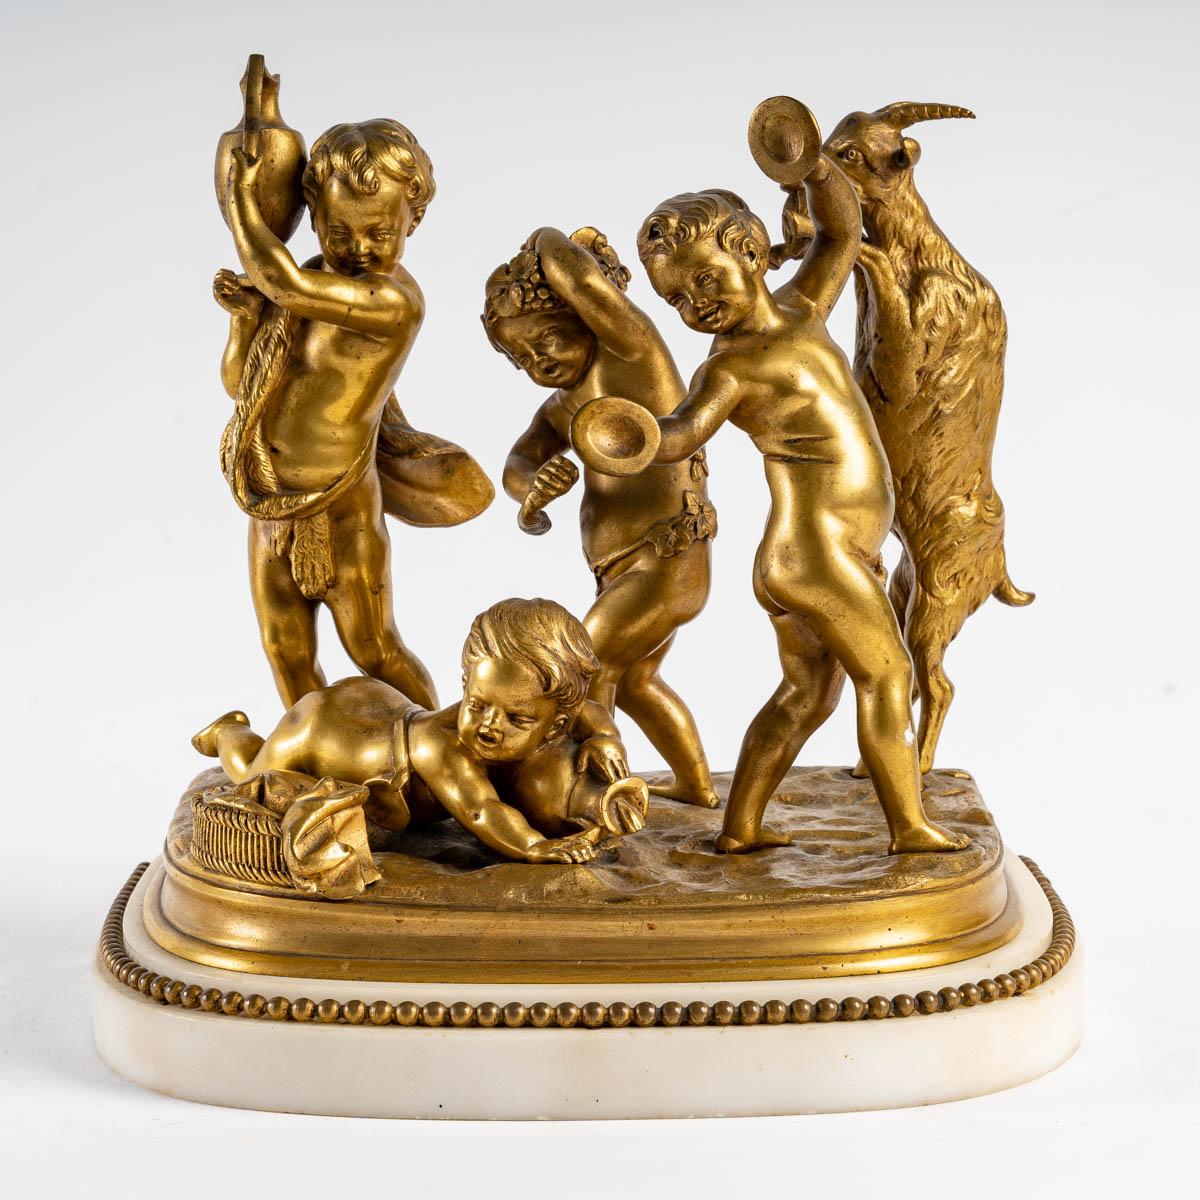 Sculpture of four children by Clodion.
Gilded bronze sculpture of four children by Clodion (Claude Michel) (1738 - 1814)
Measures: H: 24 cm, W: 23 cm, D: 18 cm.
 